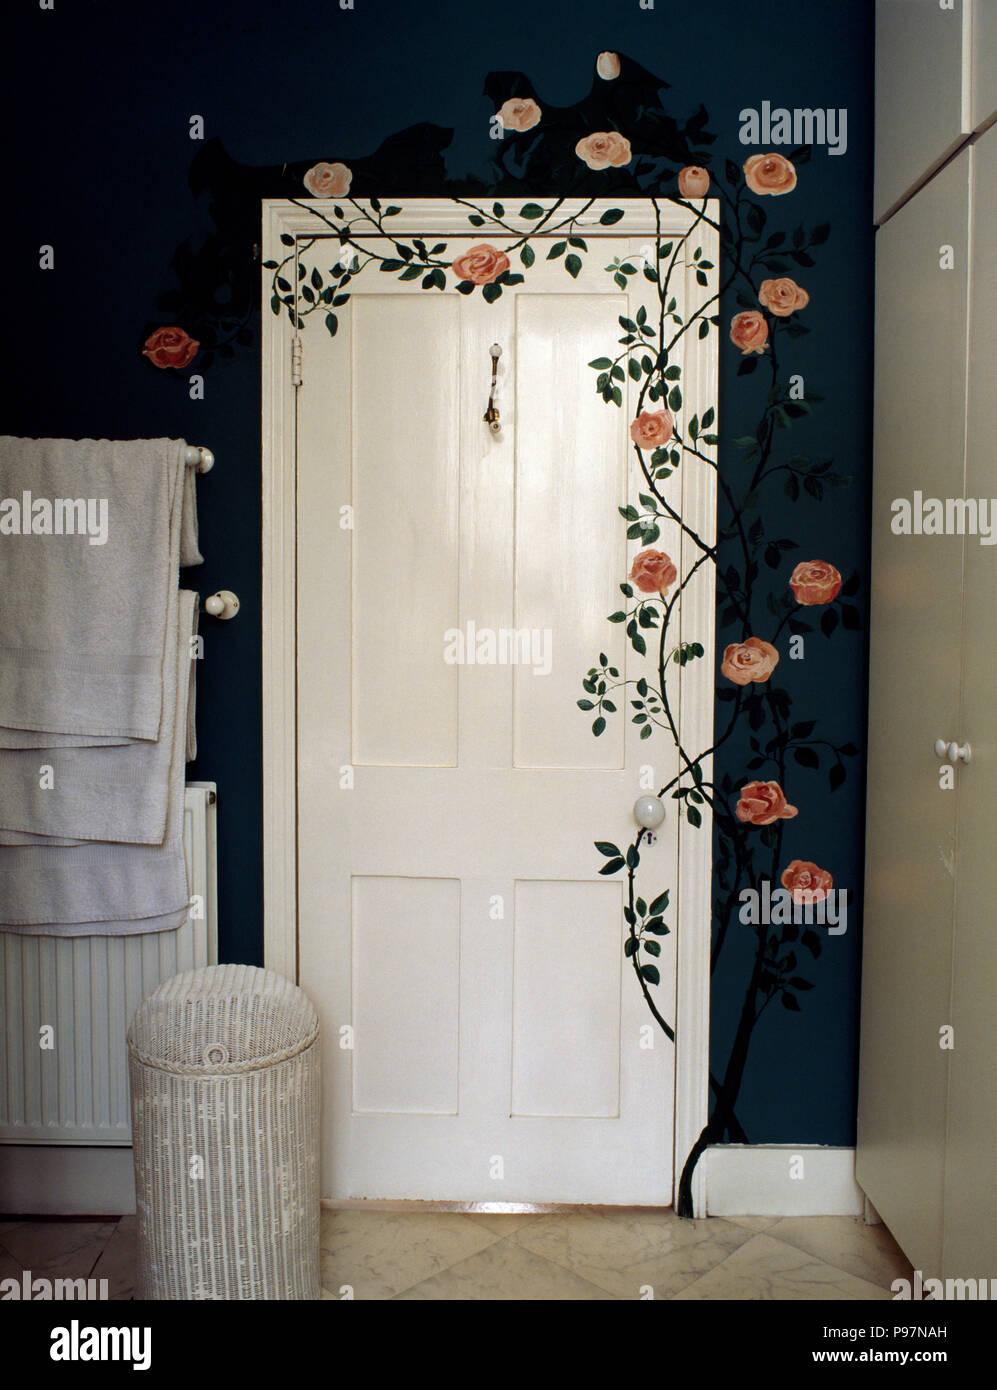 Roses painted around white door in dark blue nineties bathroom Stock Photo